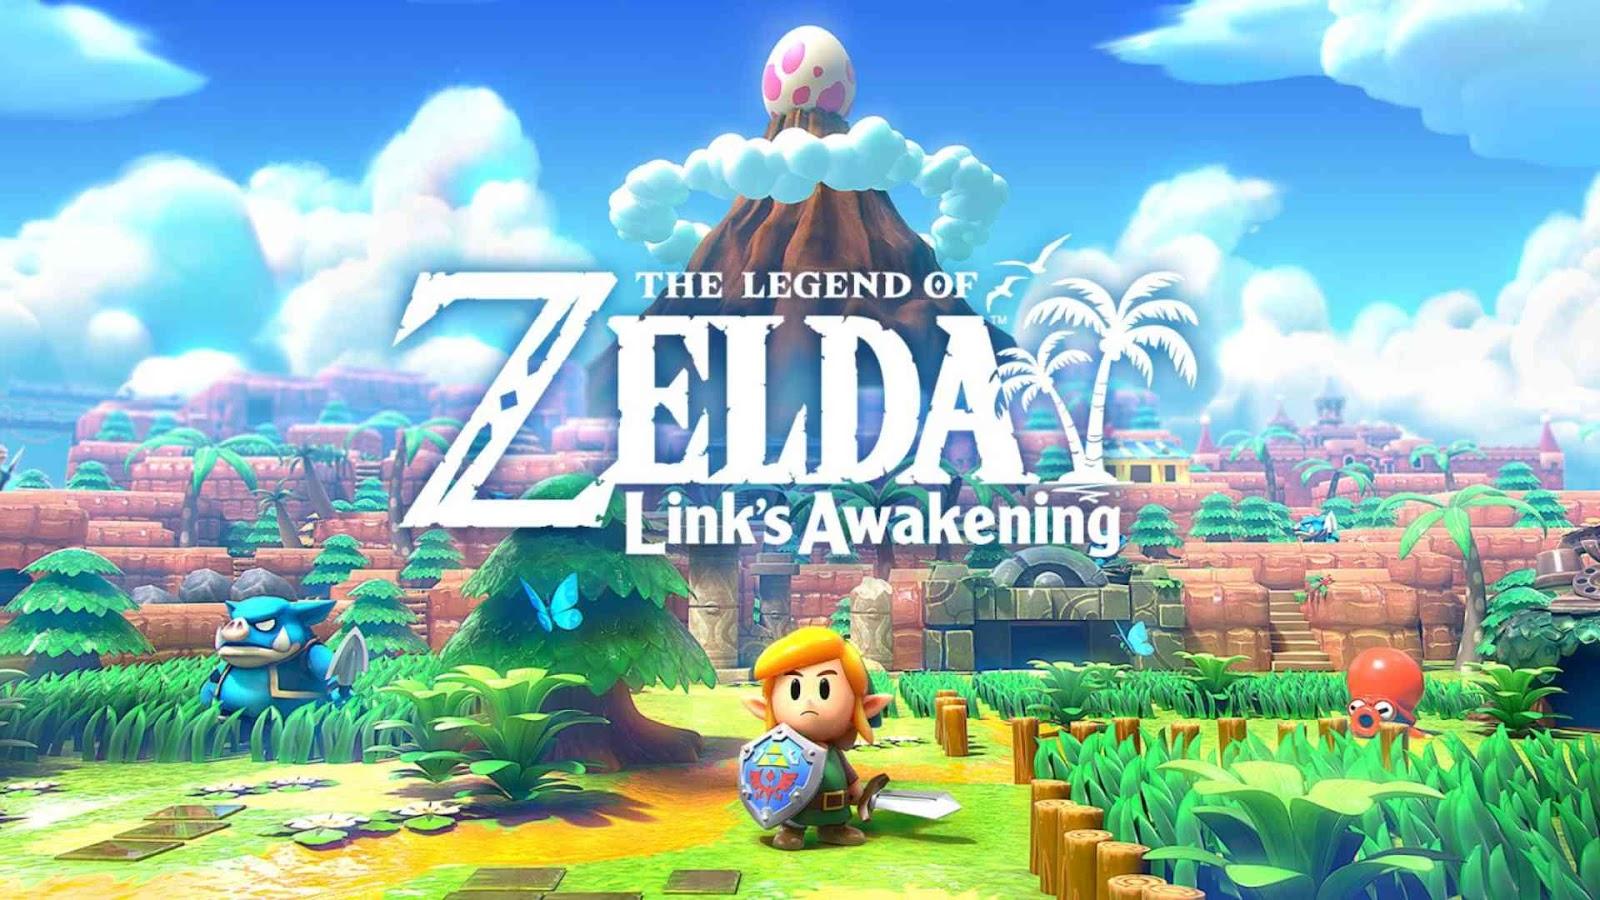 7. The Legend of Zelda: Link's Awakening